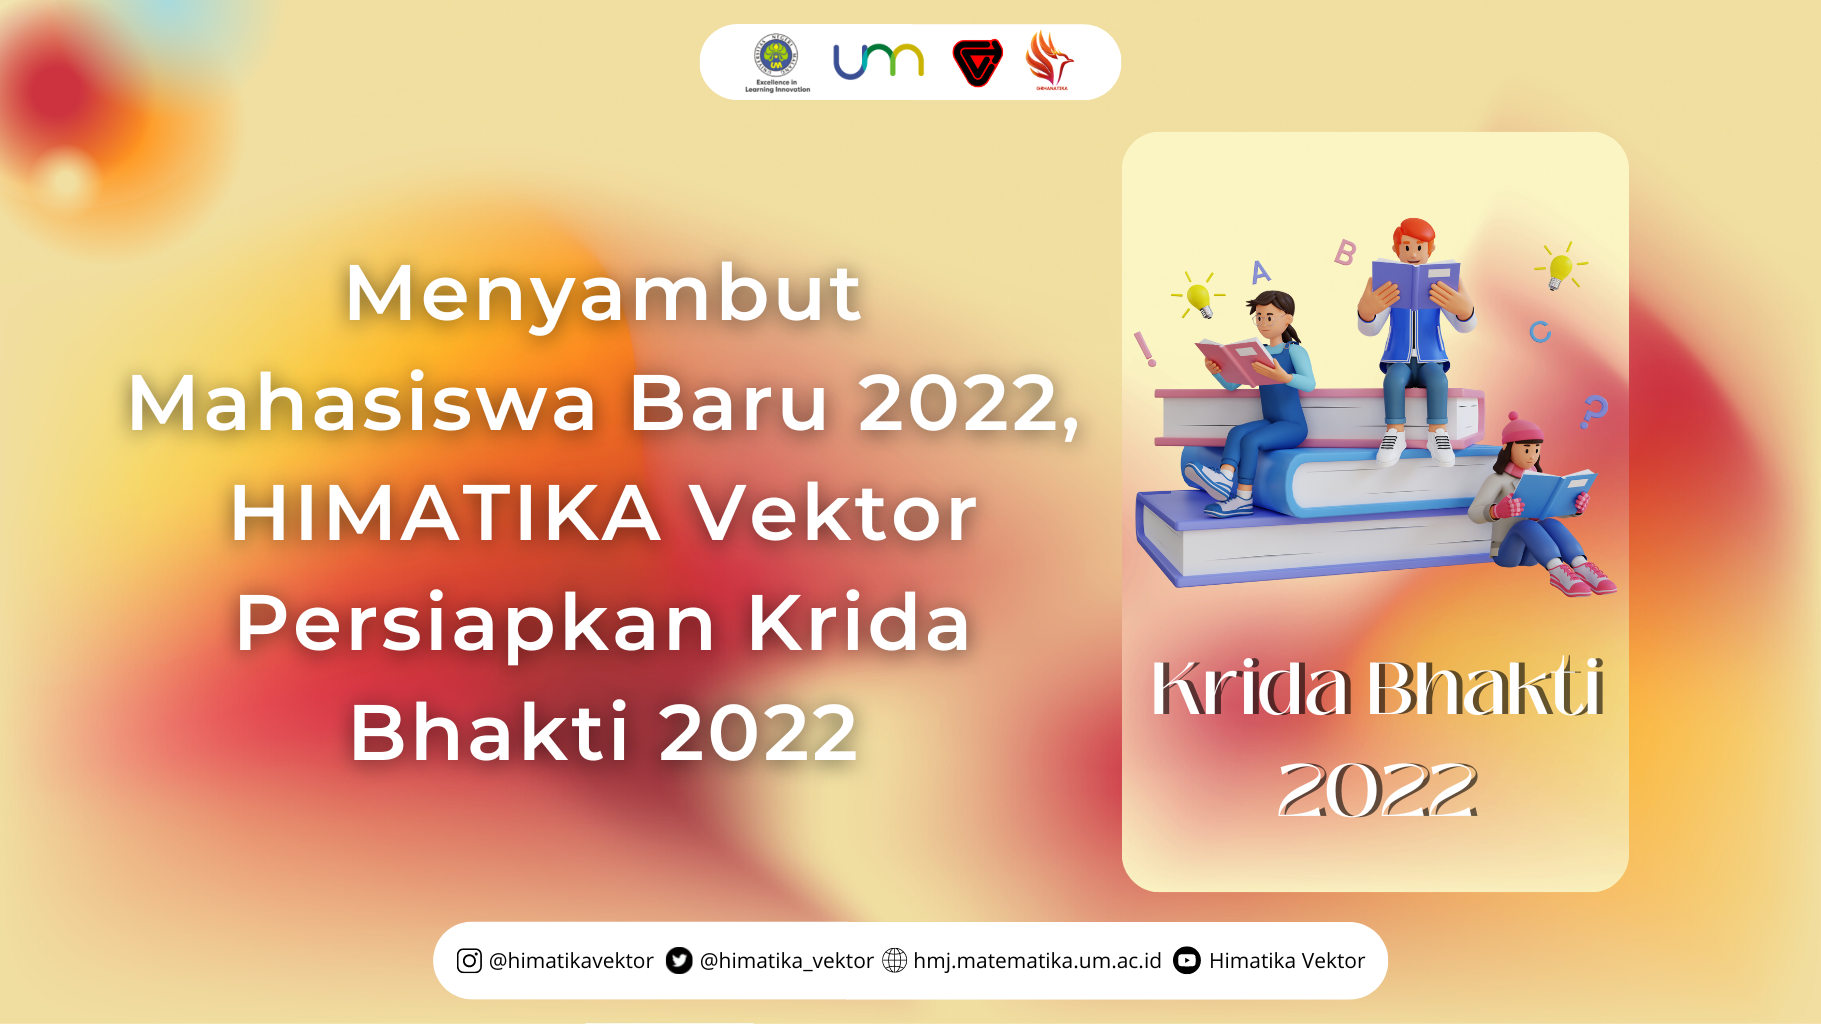 Menyambut Mahasiswa Baru 2022, HIMATIKA Vektor Persiapkan Krida Bhakti 2022